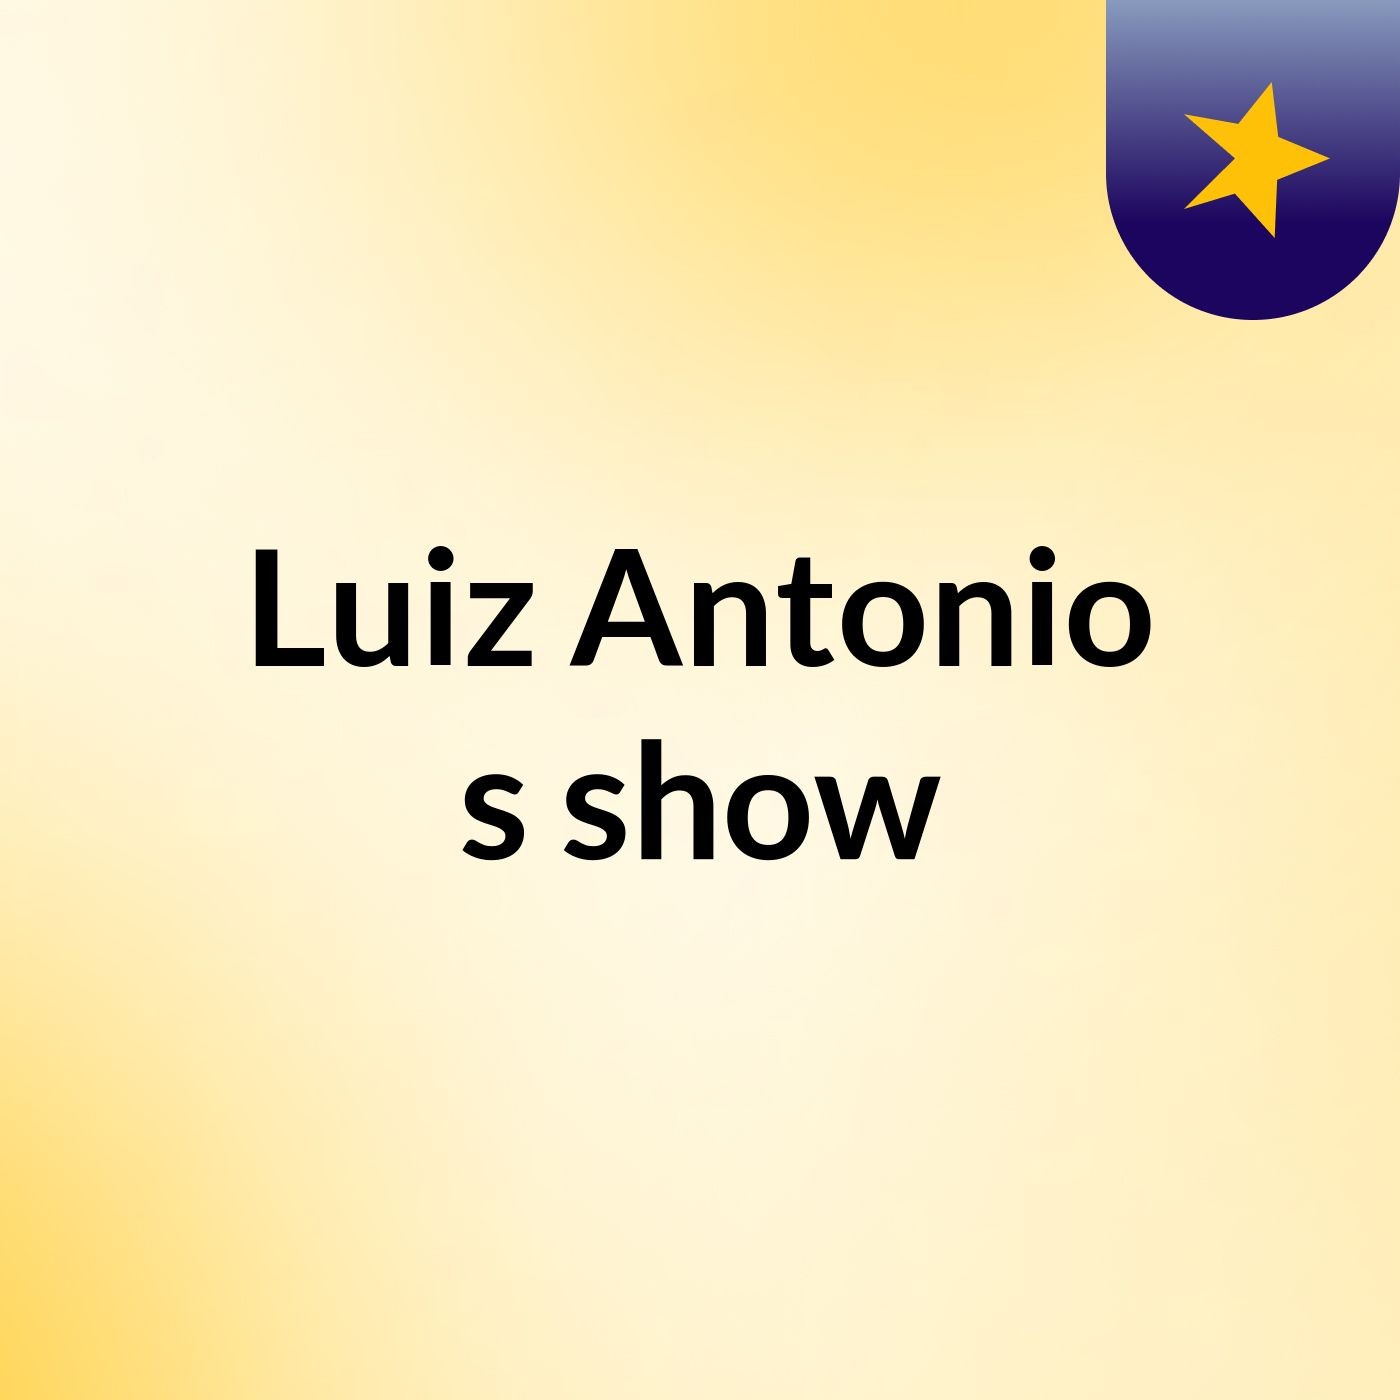 Luiz Antonio's show